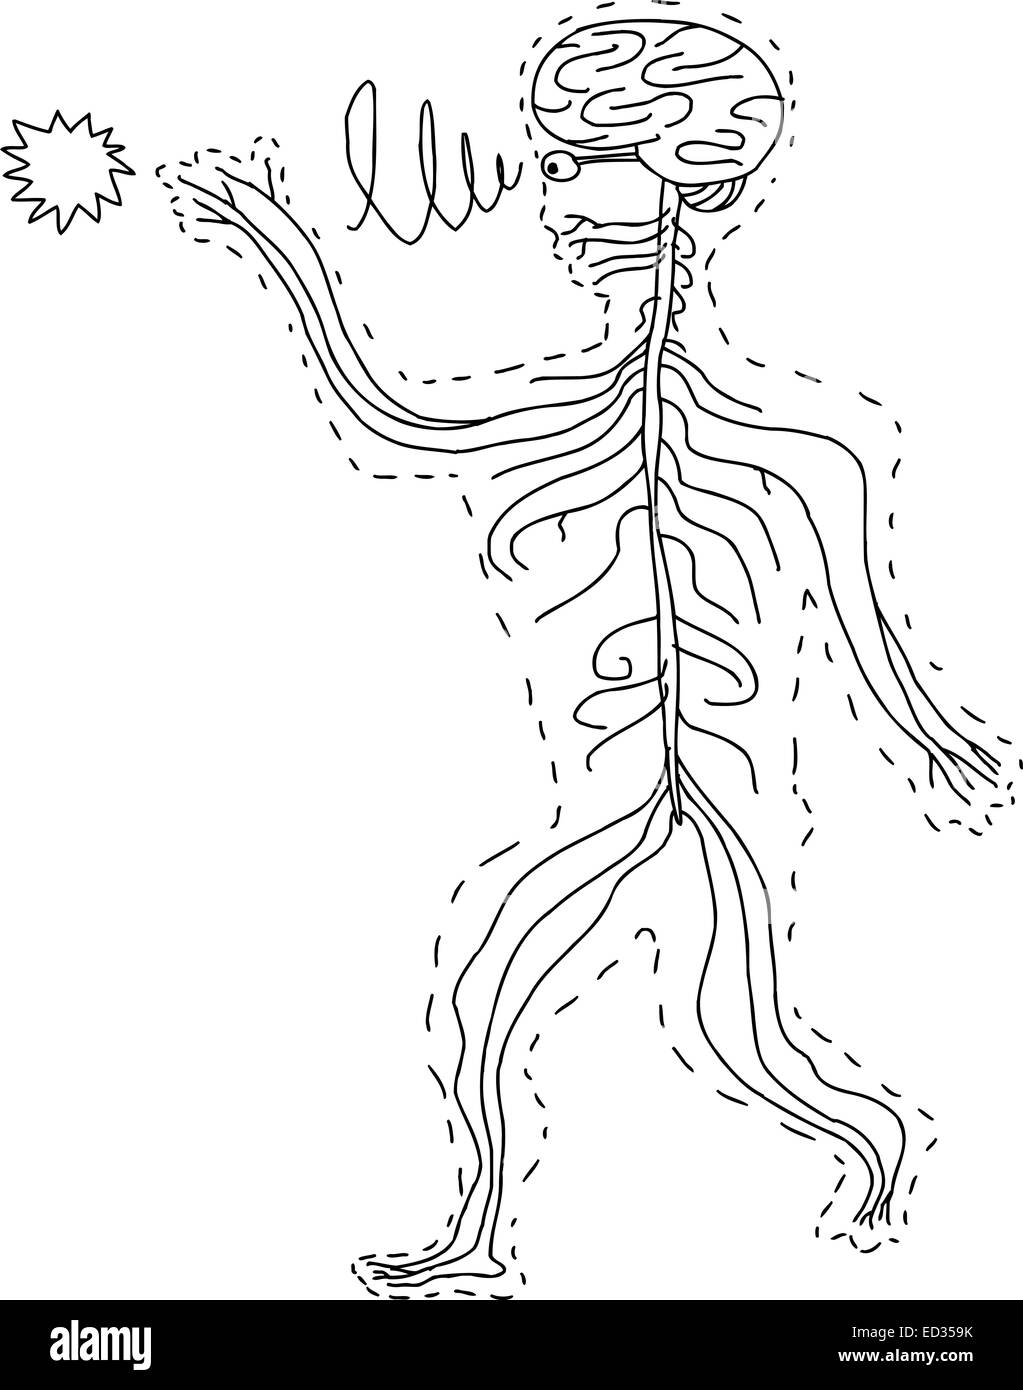 Abstract hand drawn cartoon des organes sensoriels Banque D'Images